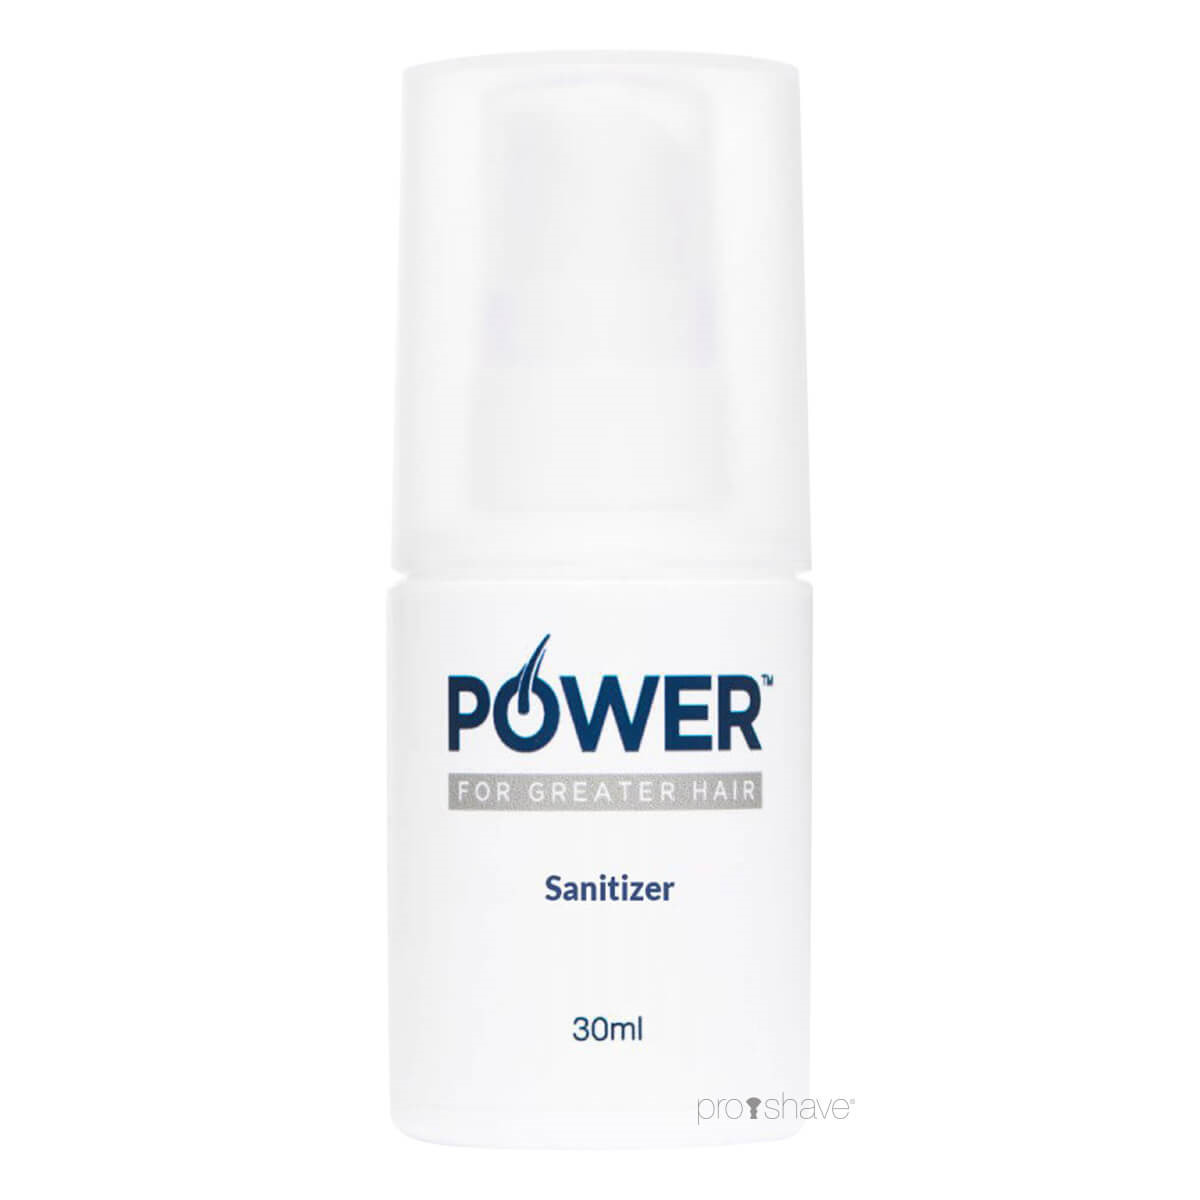 Billede af POWER Sanitizer, 30 ml.